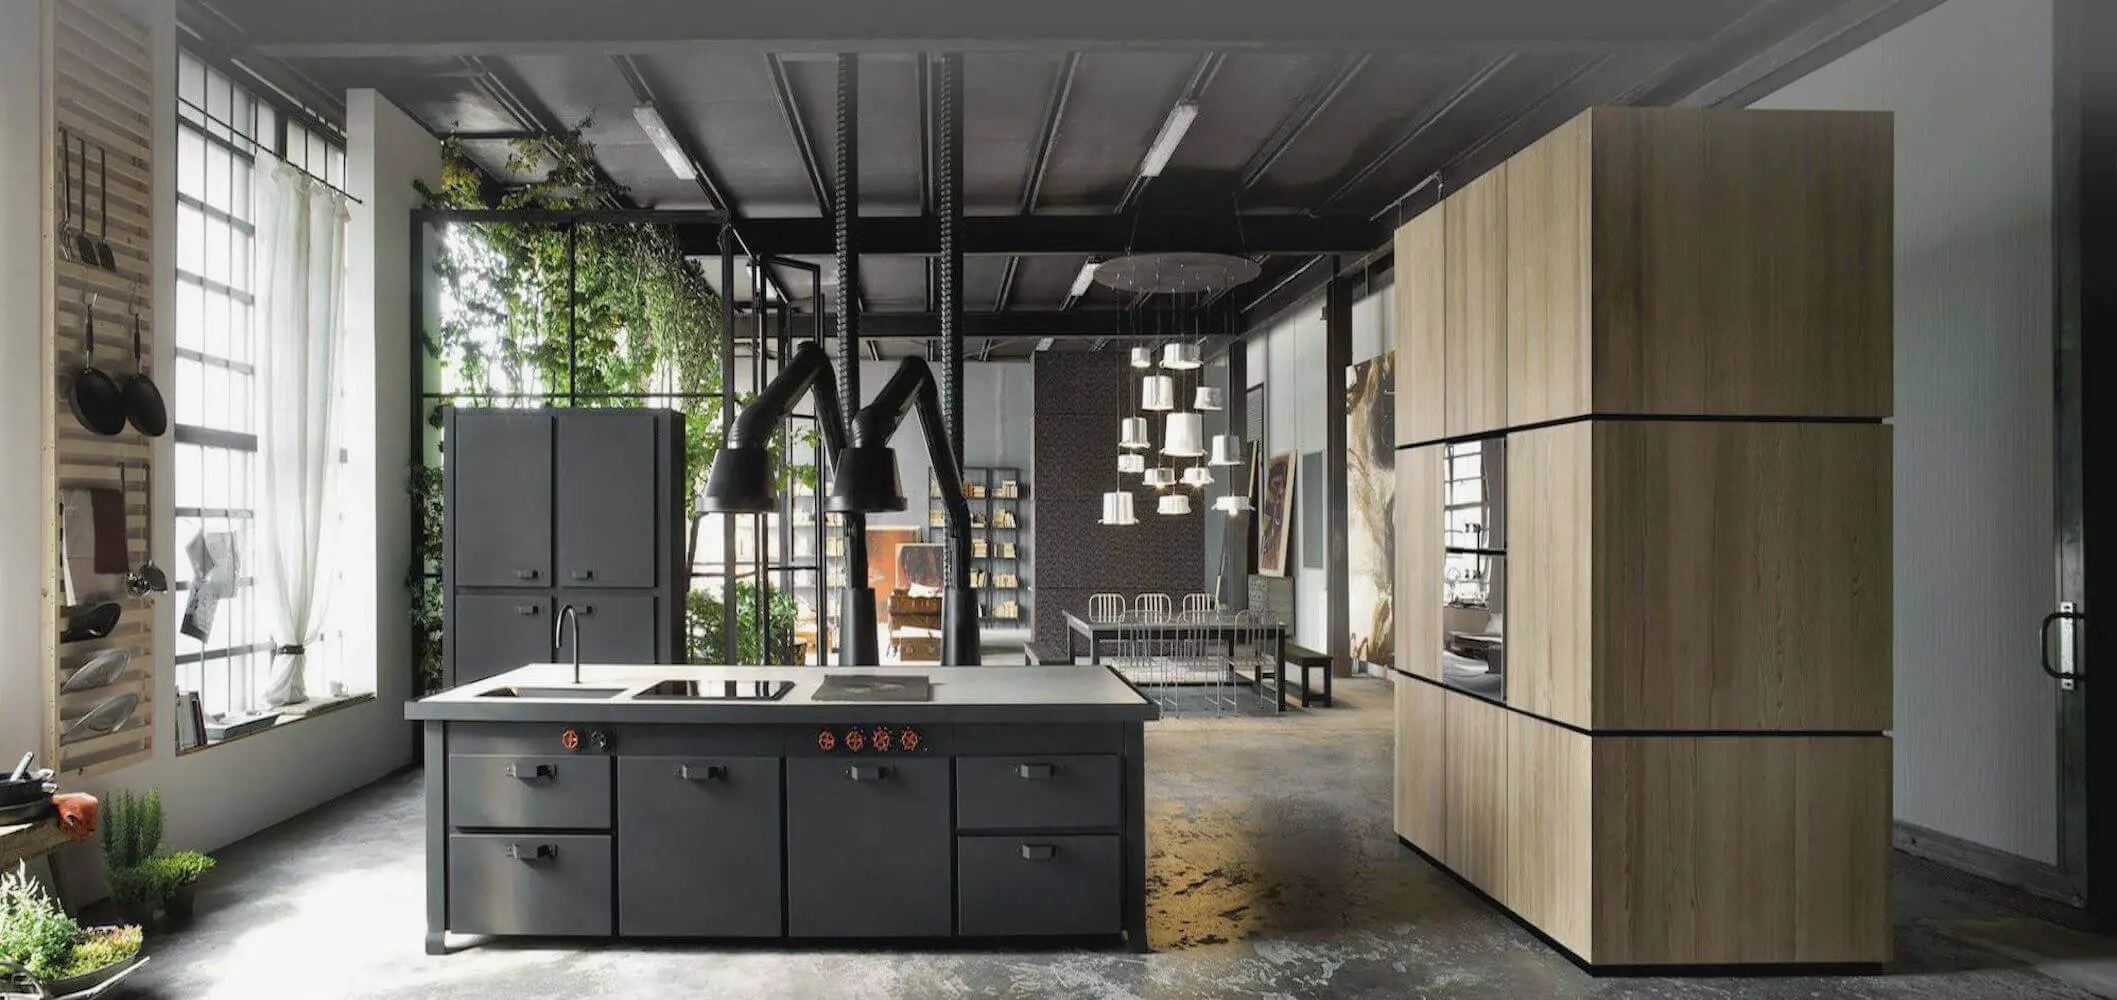 Modern Industrial Kitchen Cabinets